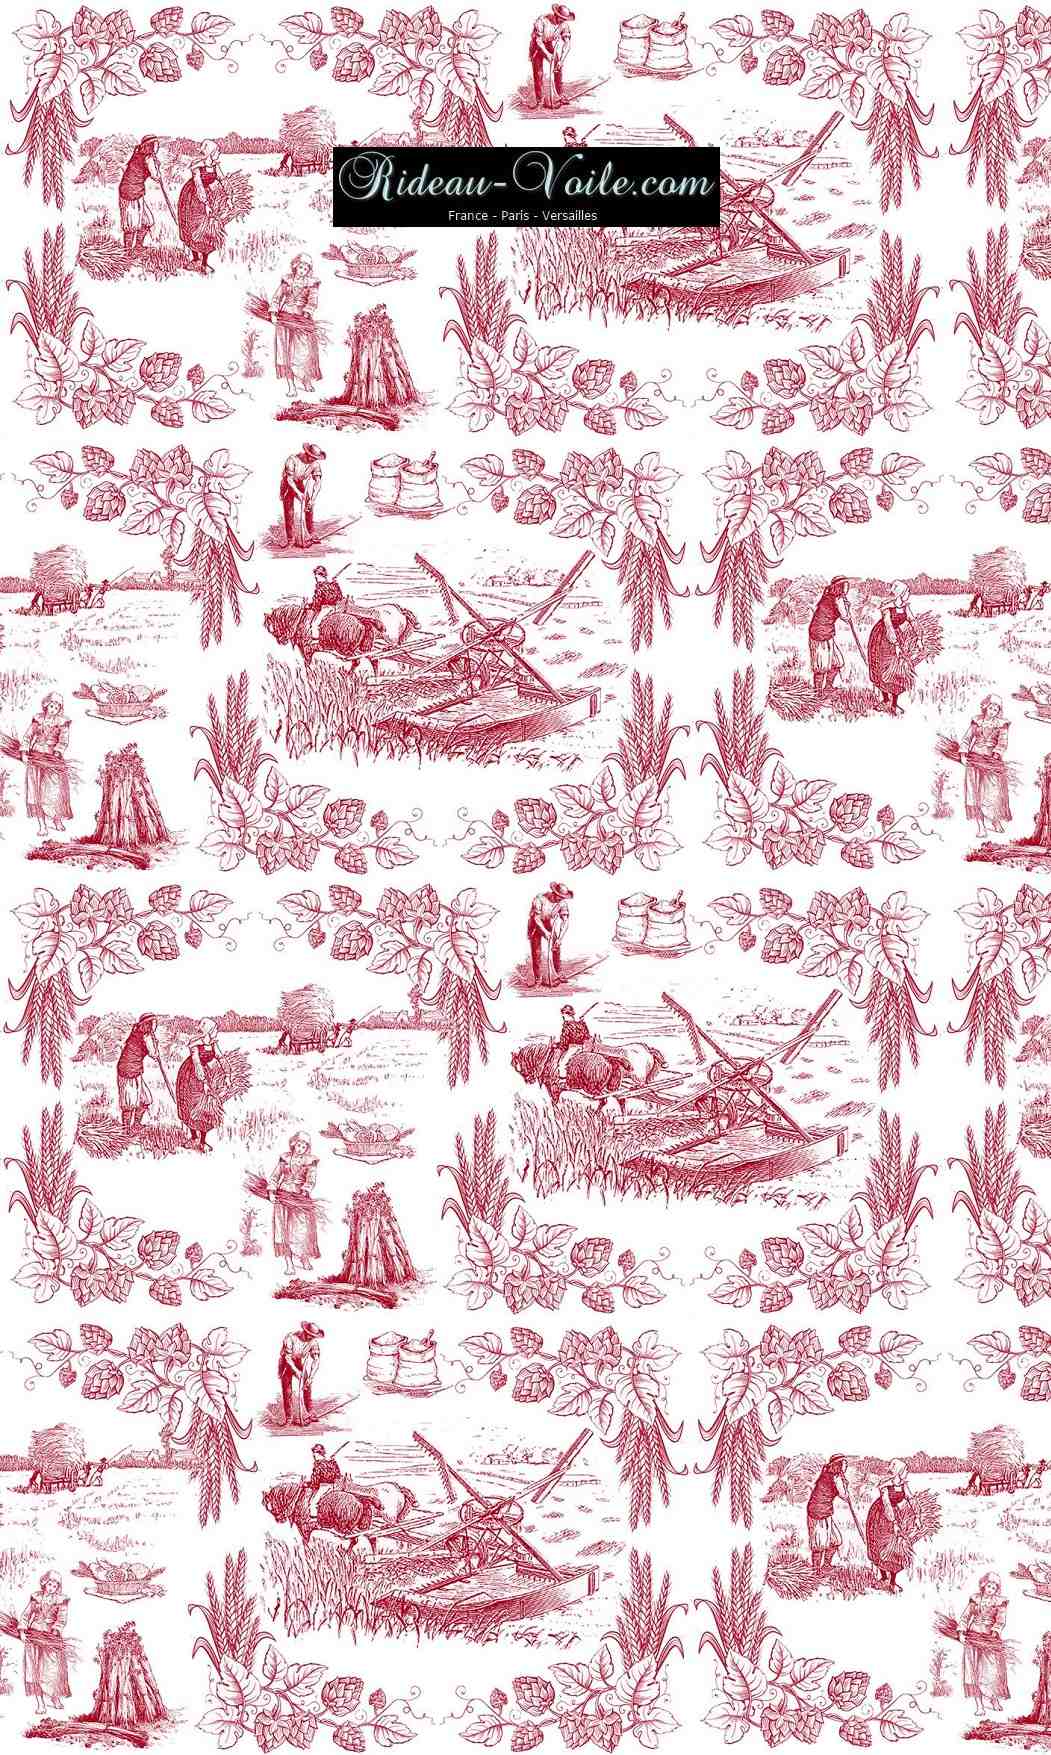 Toile de Jouy tissu au mètre ameublement textile Paris Versailles Yvelines decoration french pattern haut gamme rouge